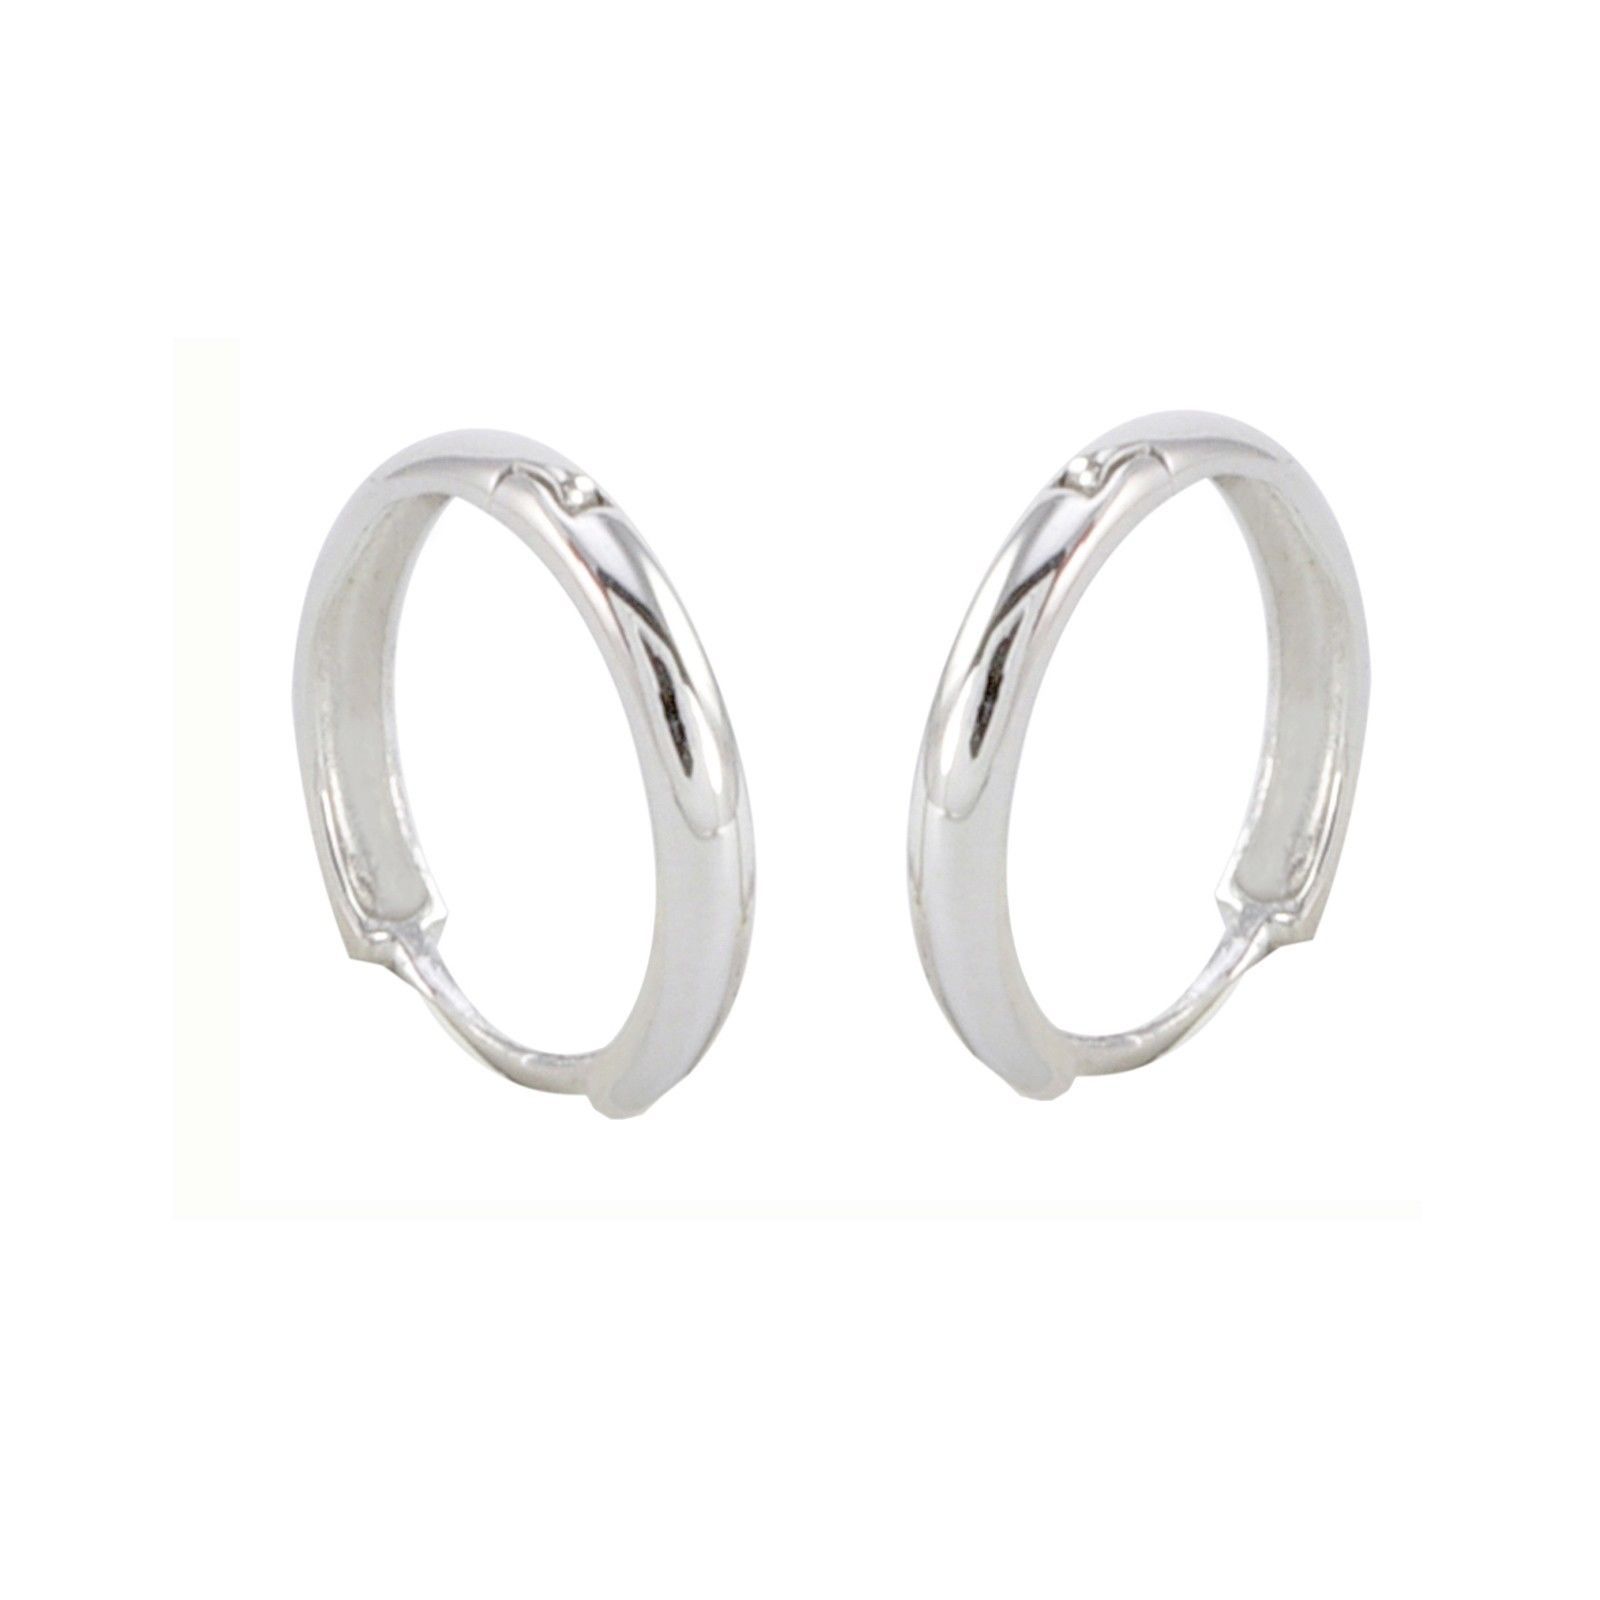 Primary image for 10k White Gold Hoop Earrings 13mm Medium Hinged Hoops